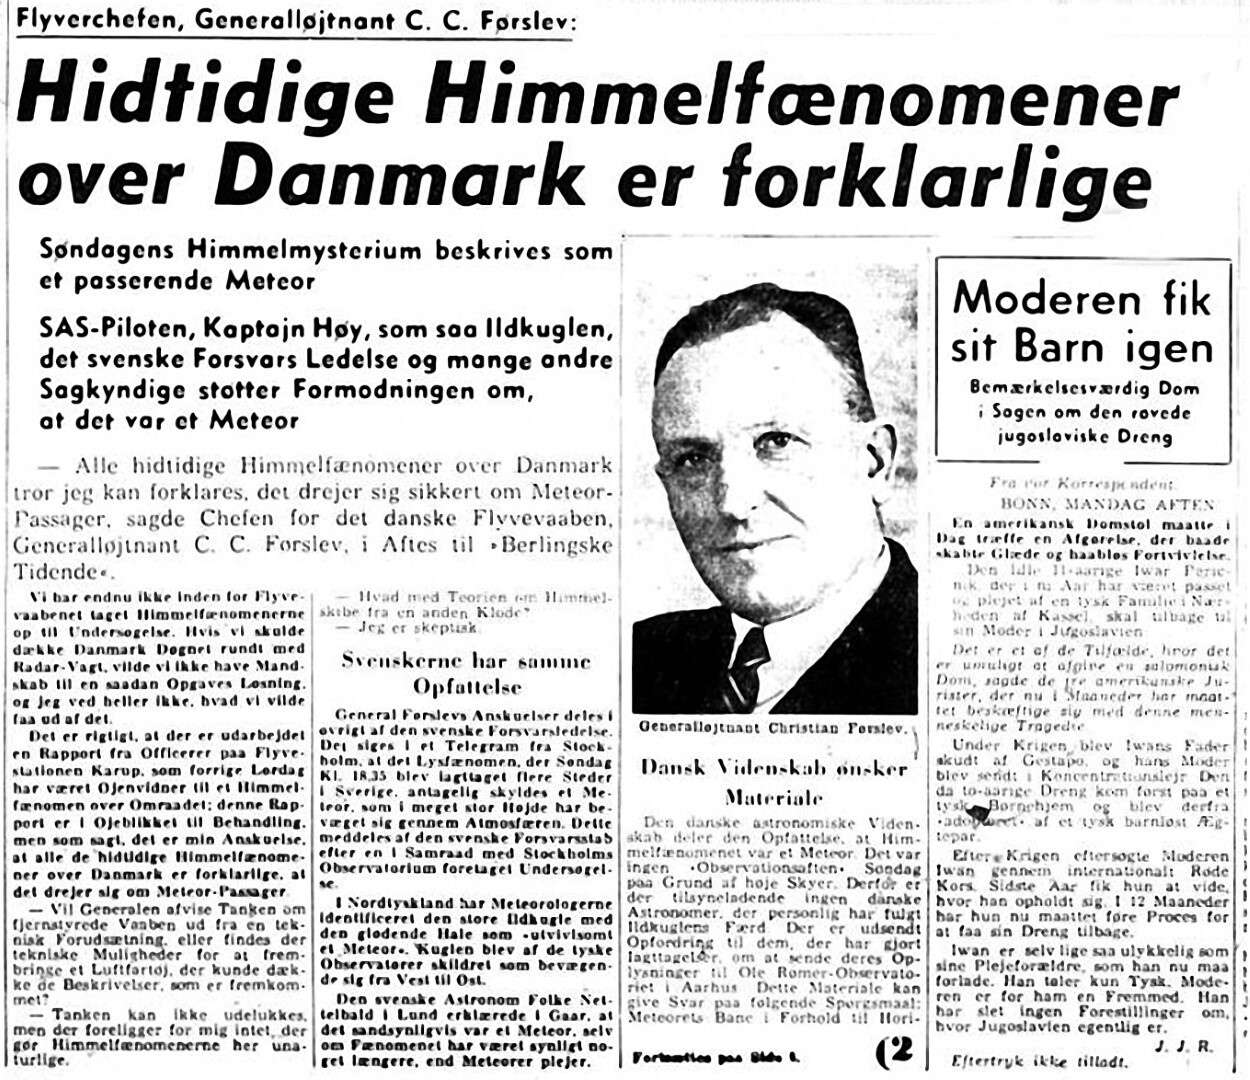 03-berlingske-tidende-1952-09-30-1-300-large